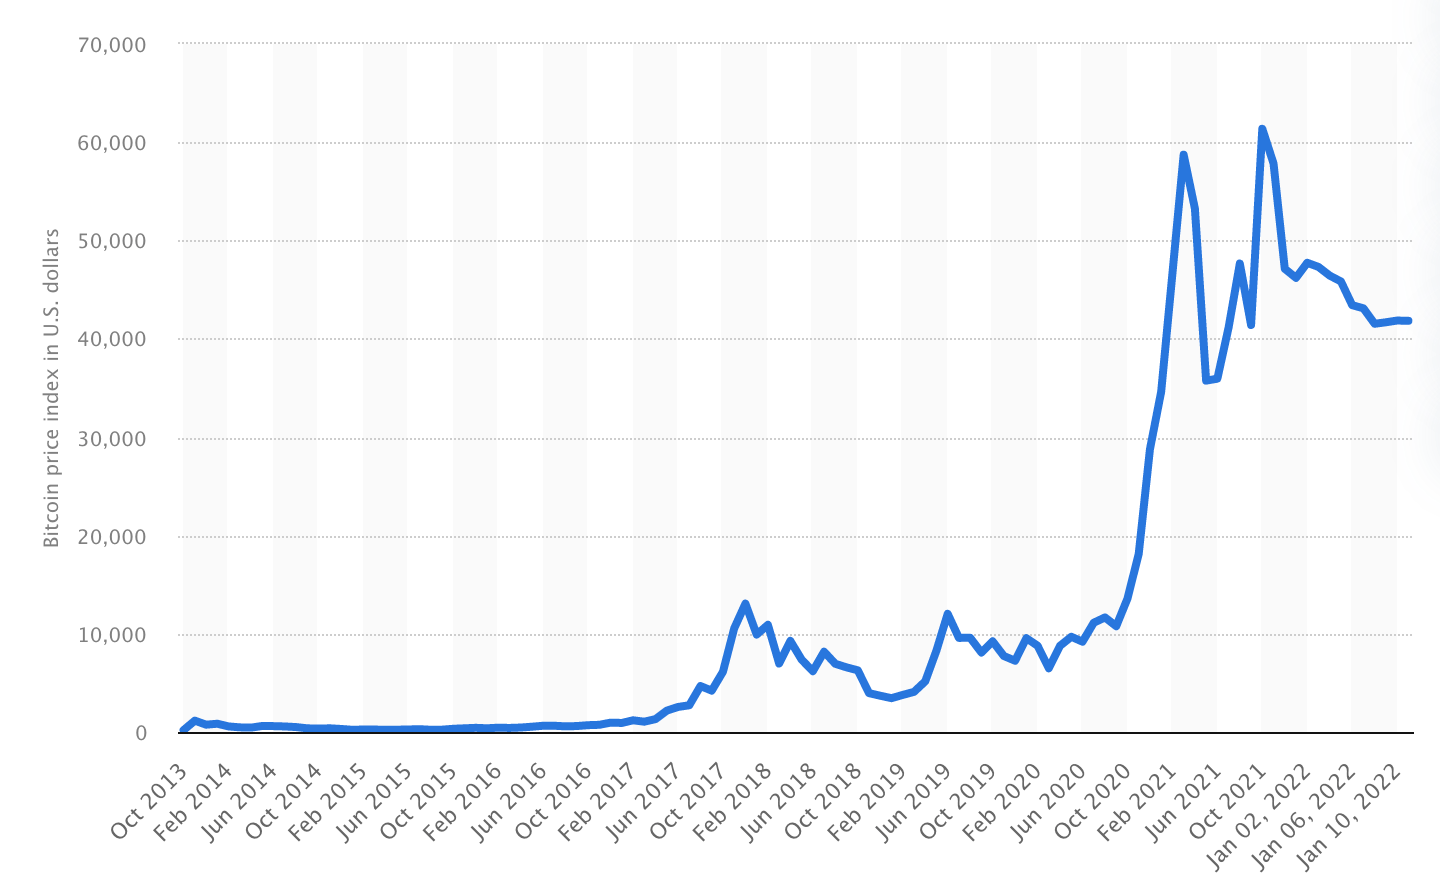 BTC price history